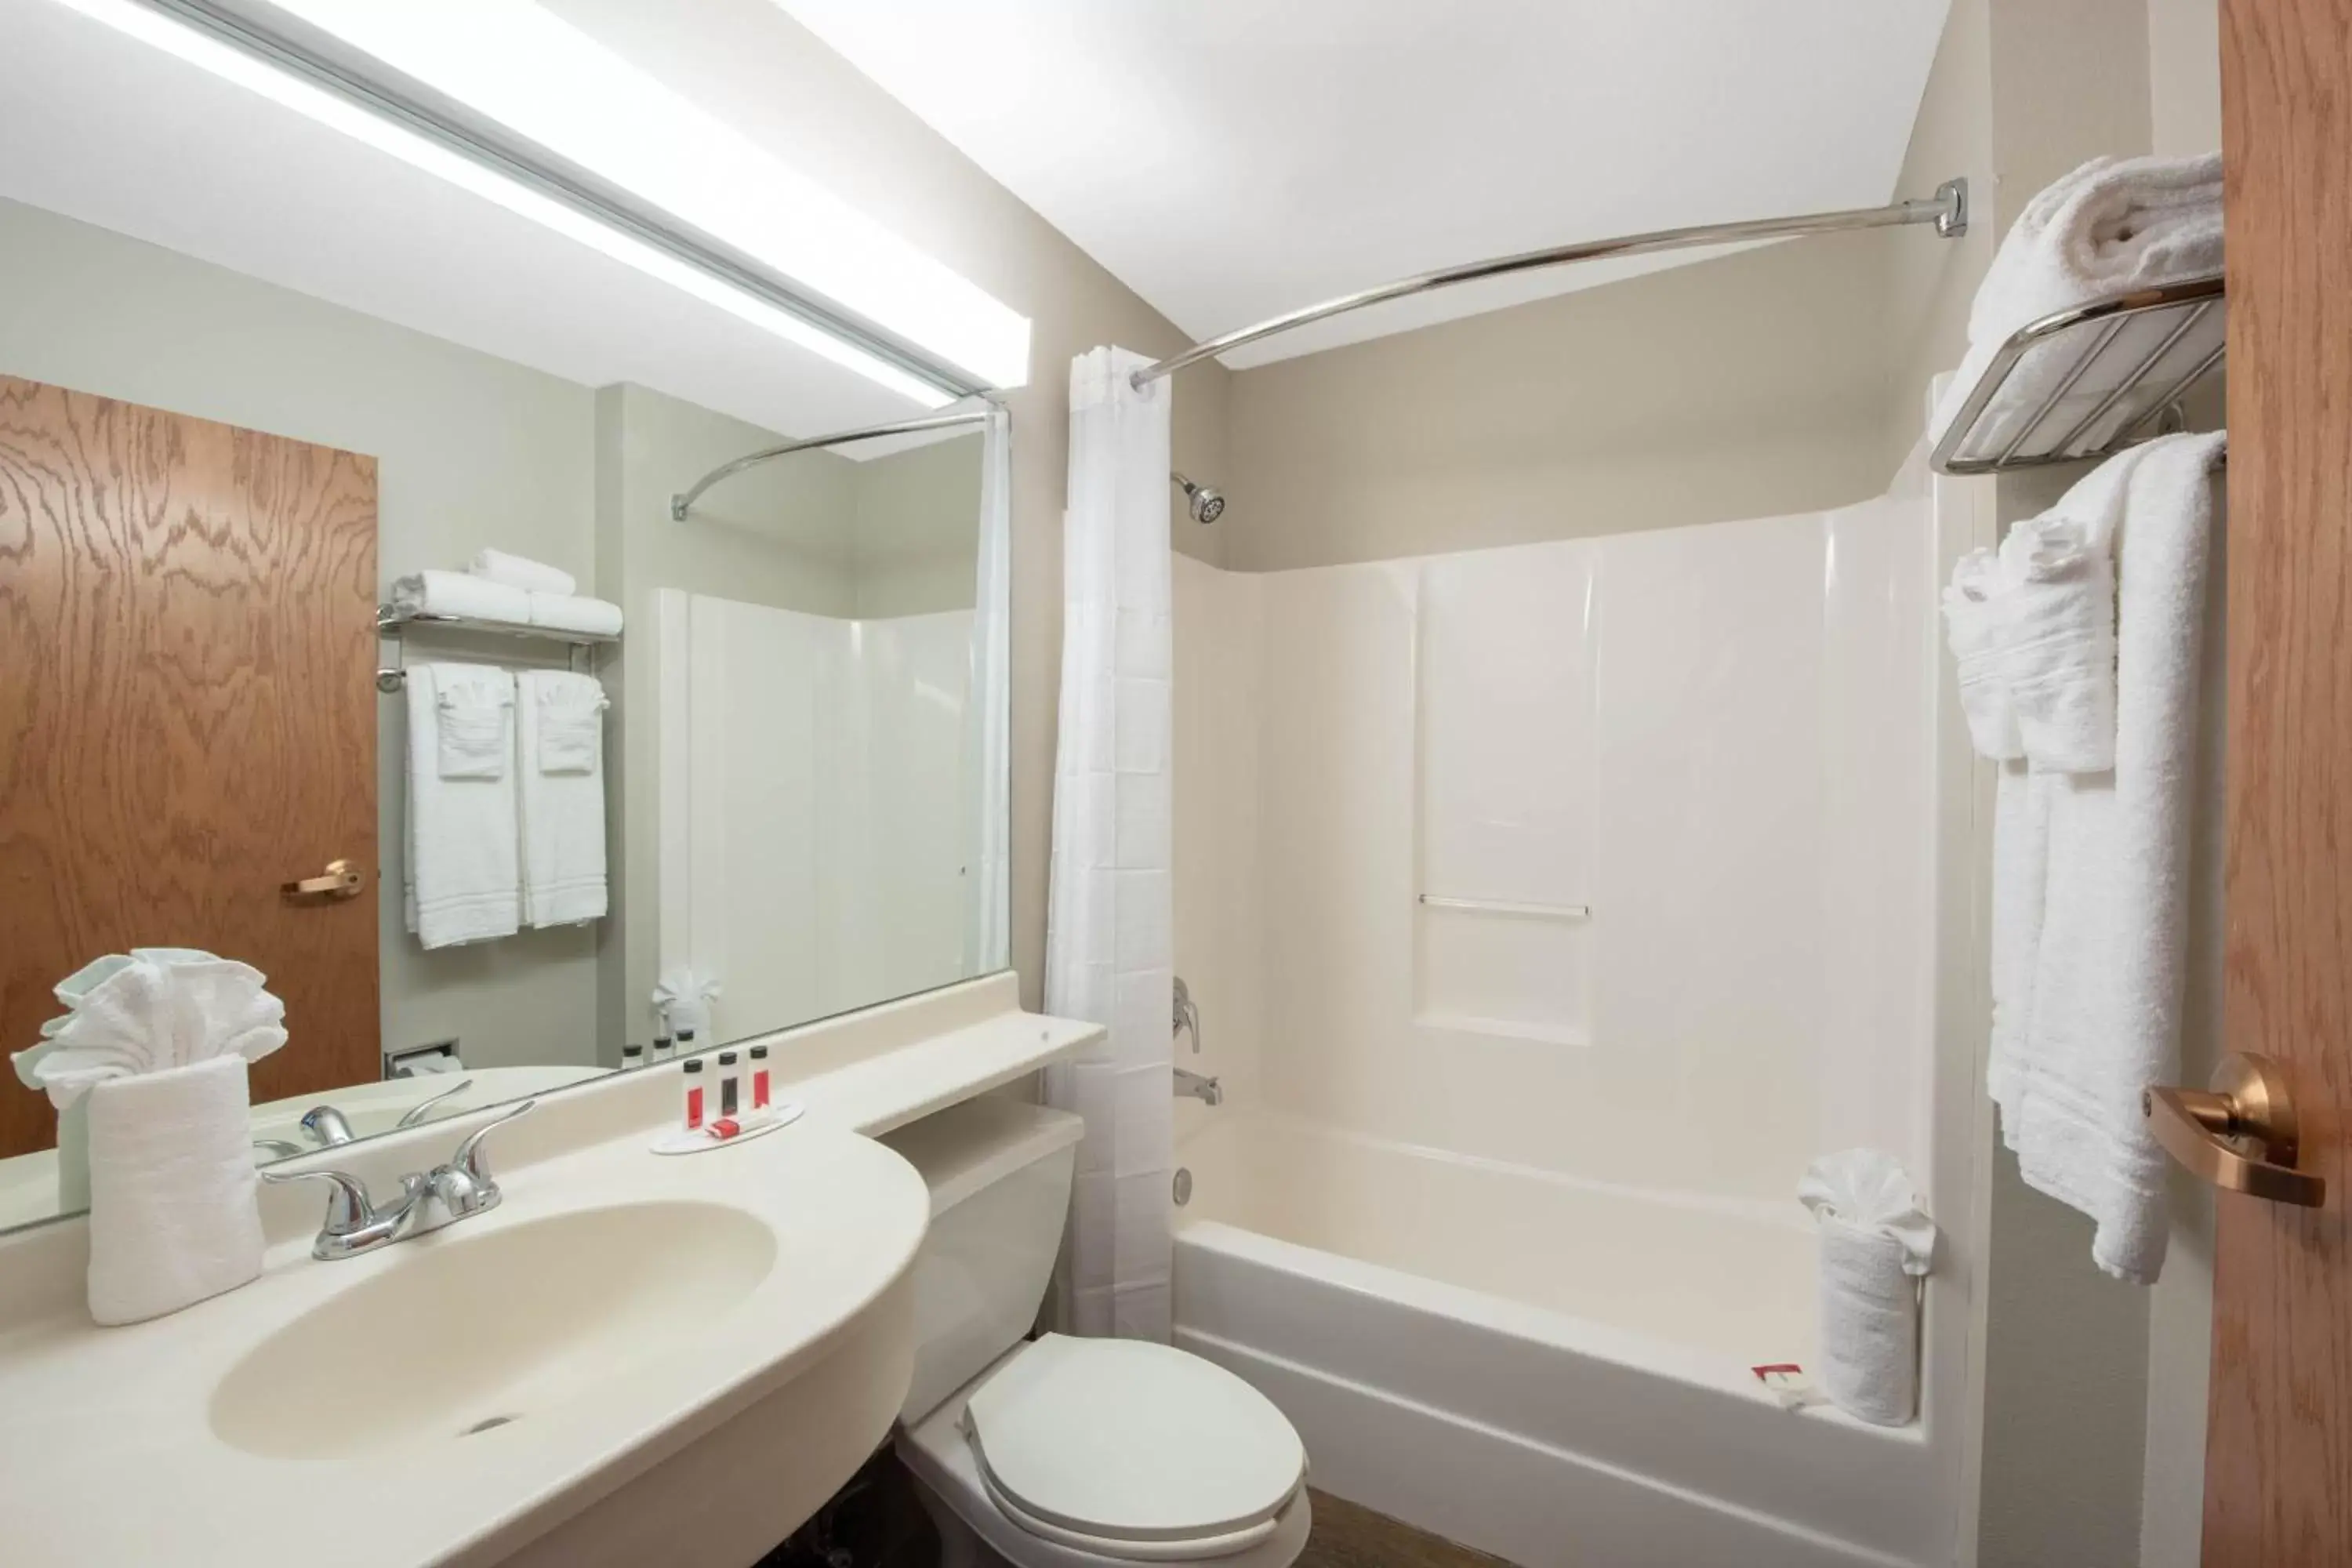 Toilet, Bathroom in Microtel Inn & Suites by Wyndham Springfield